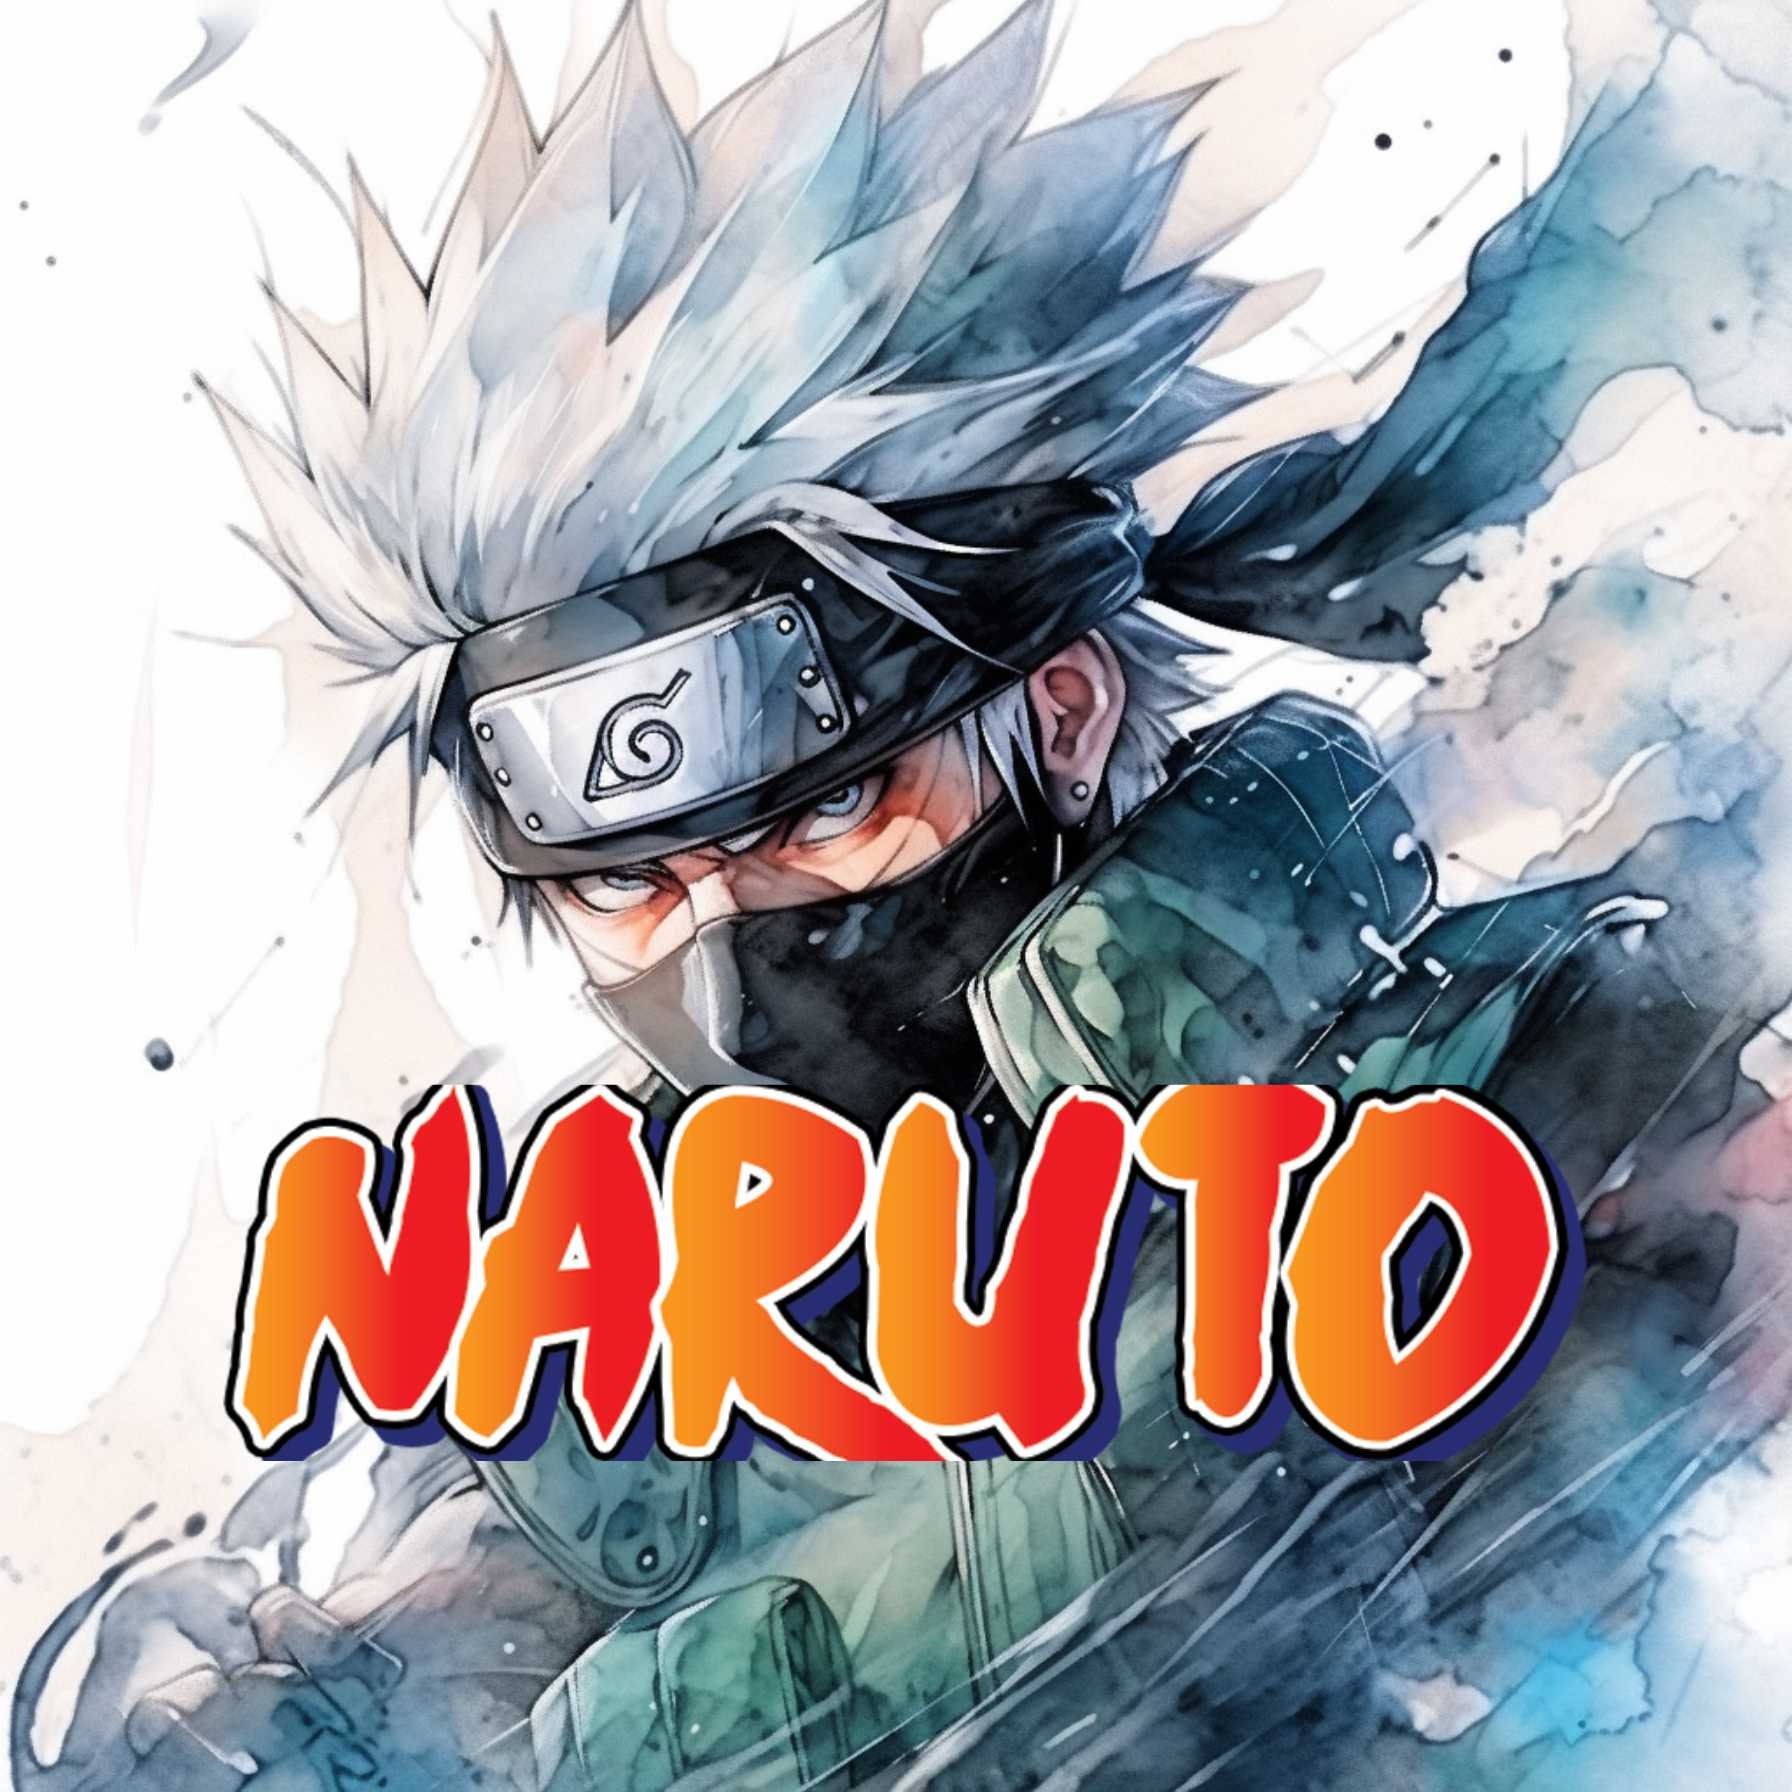 Times Comic Naruto Hokage Poster, Naruto Uzumaki Hokage Anime Poster, Naruto Wall Poster